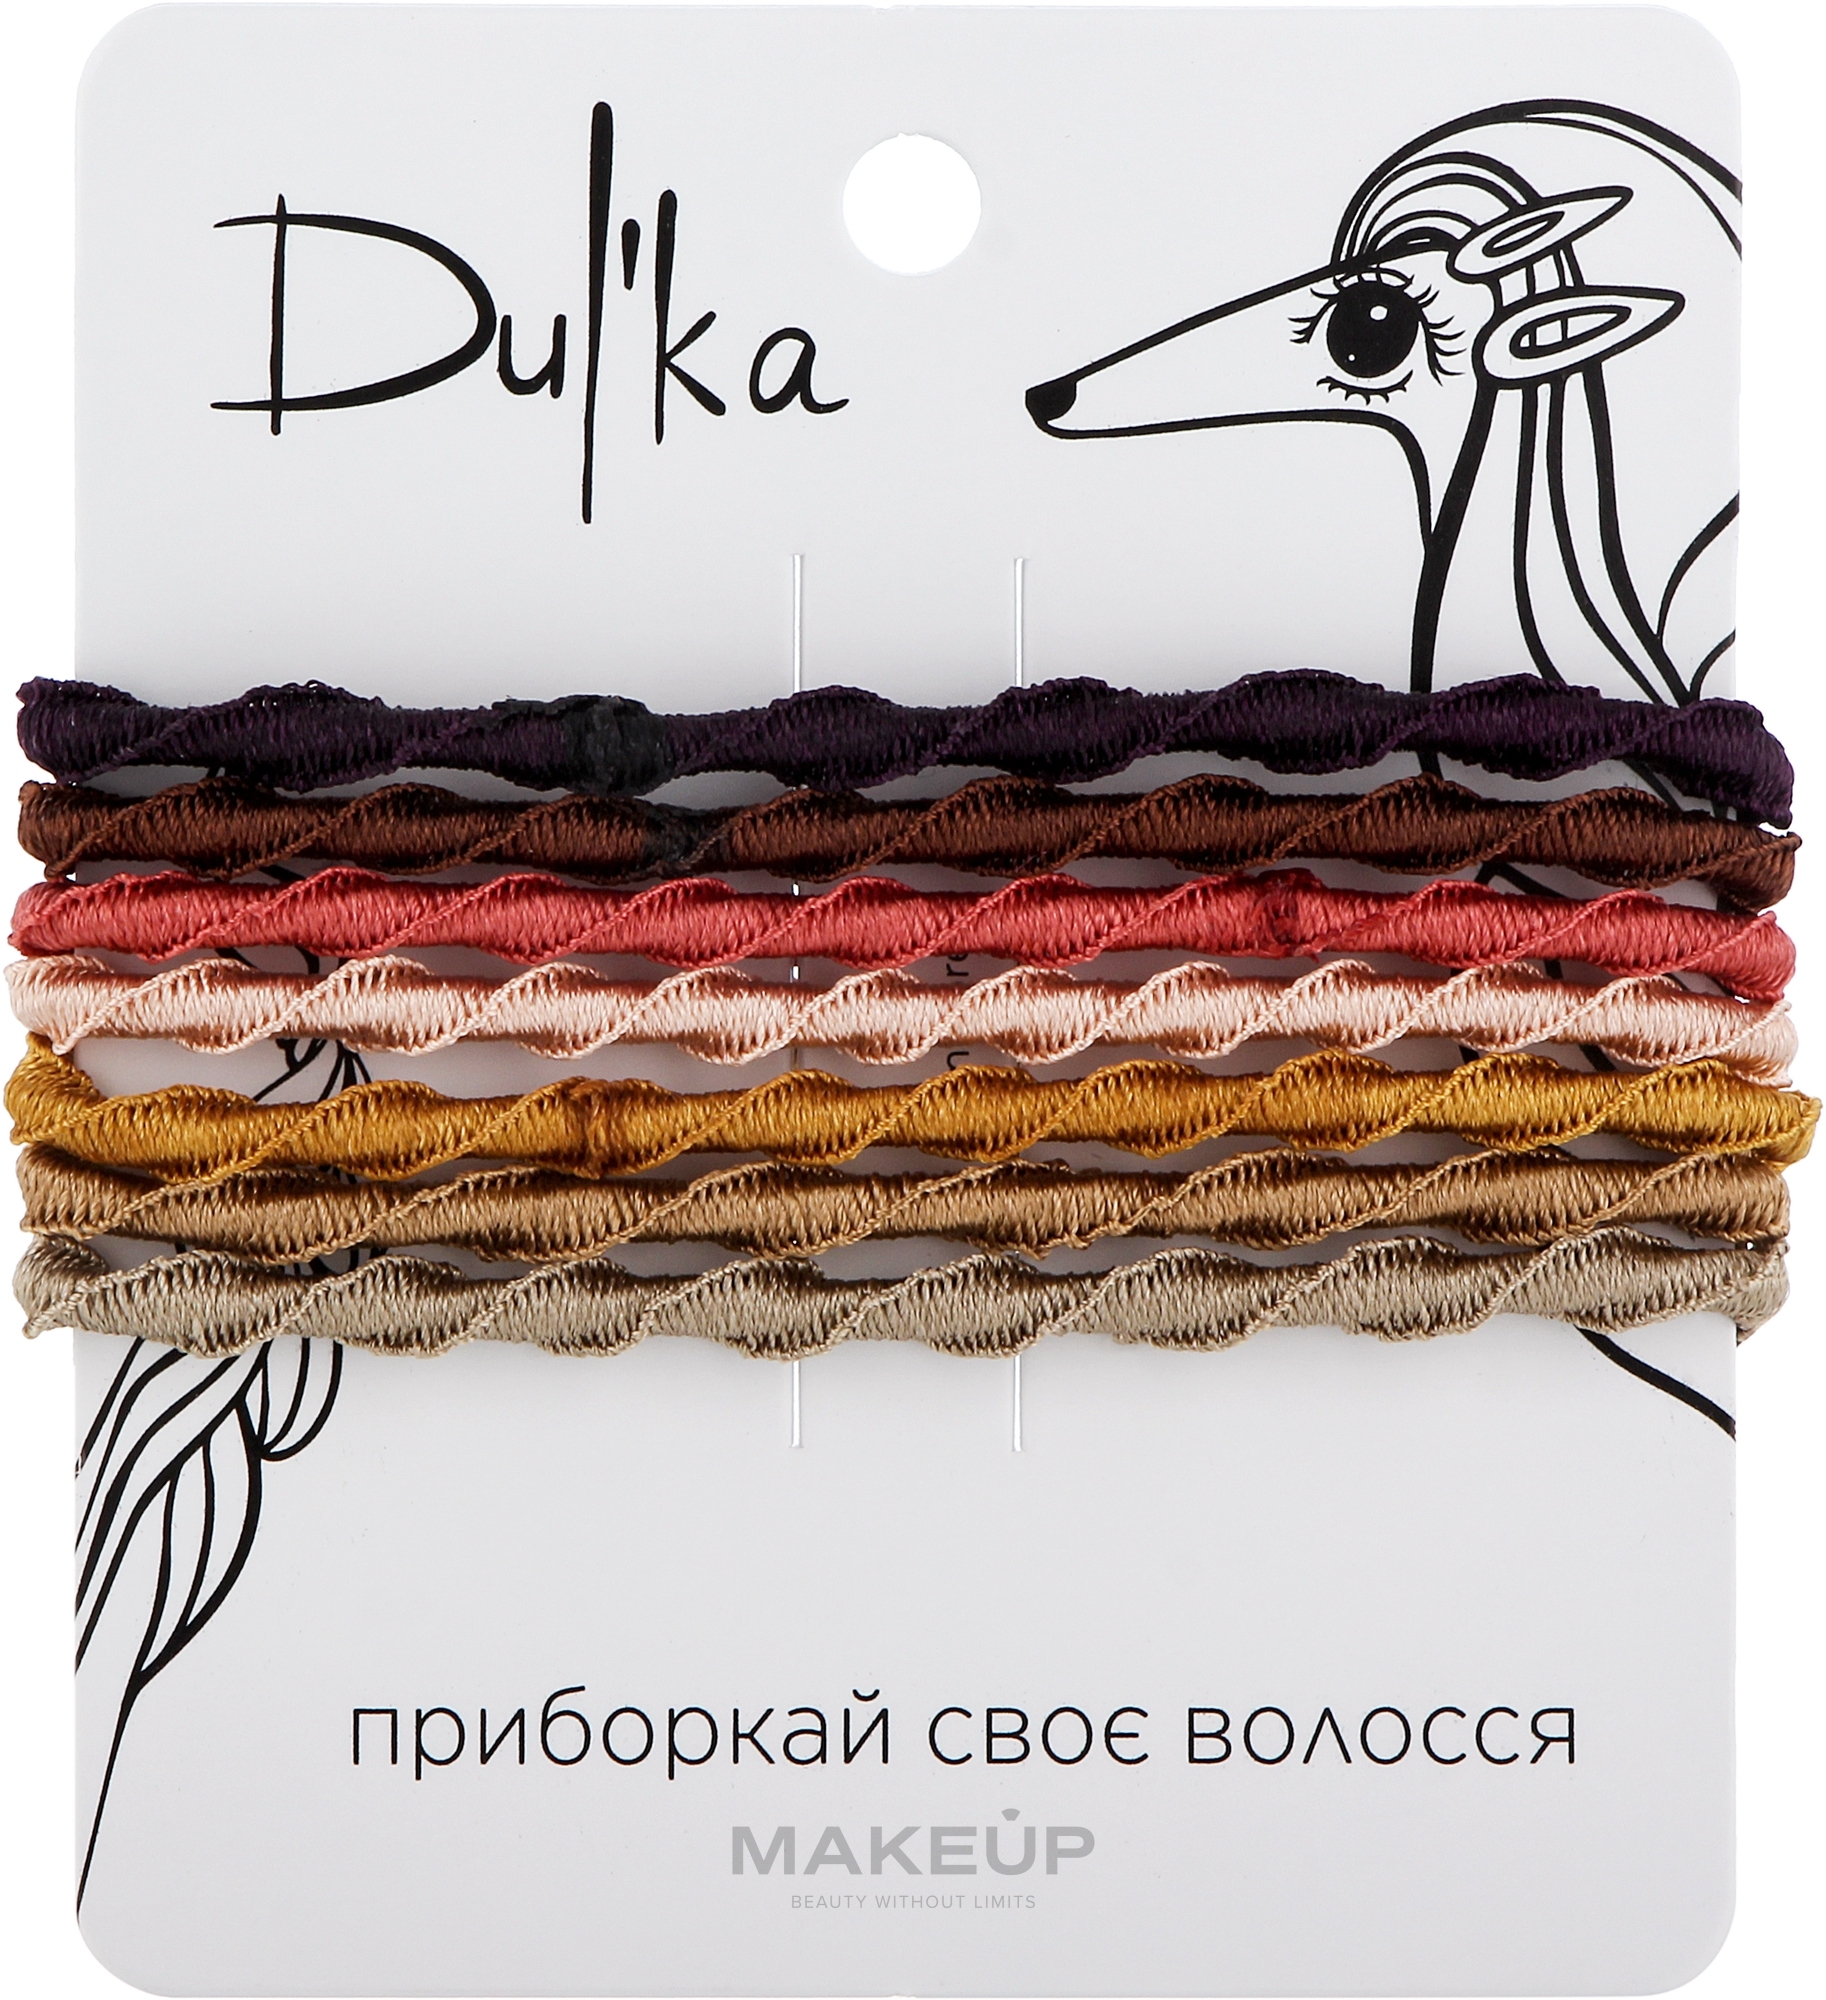 Набор разноцветных резинок для волос UH717781, 7 шт - Dulka — фото 7шт